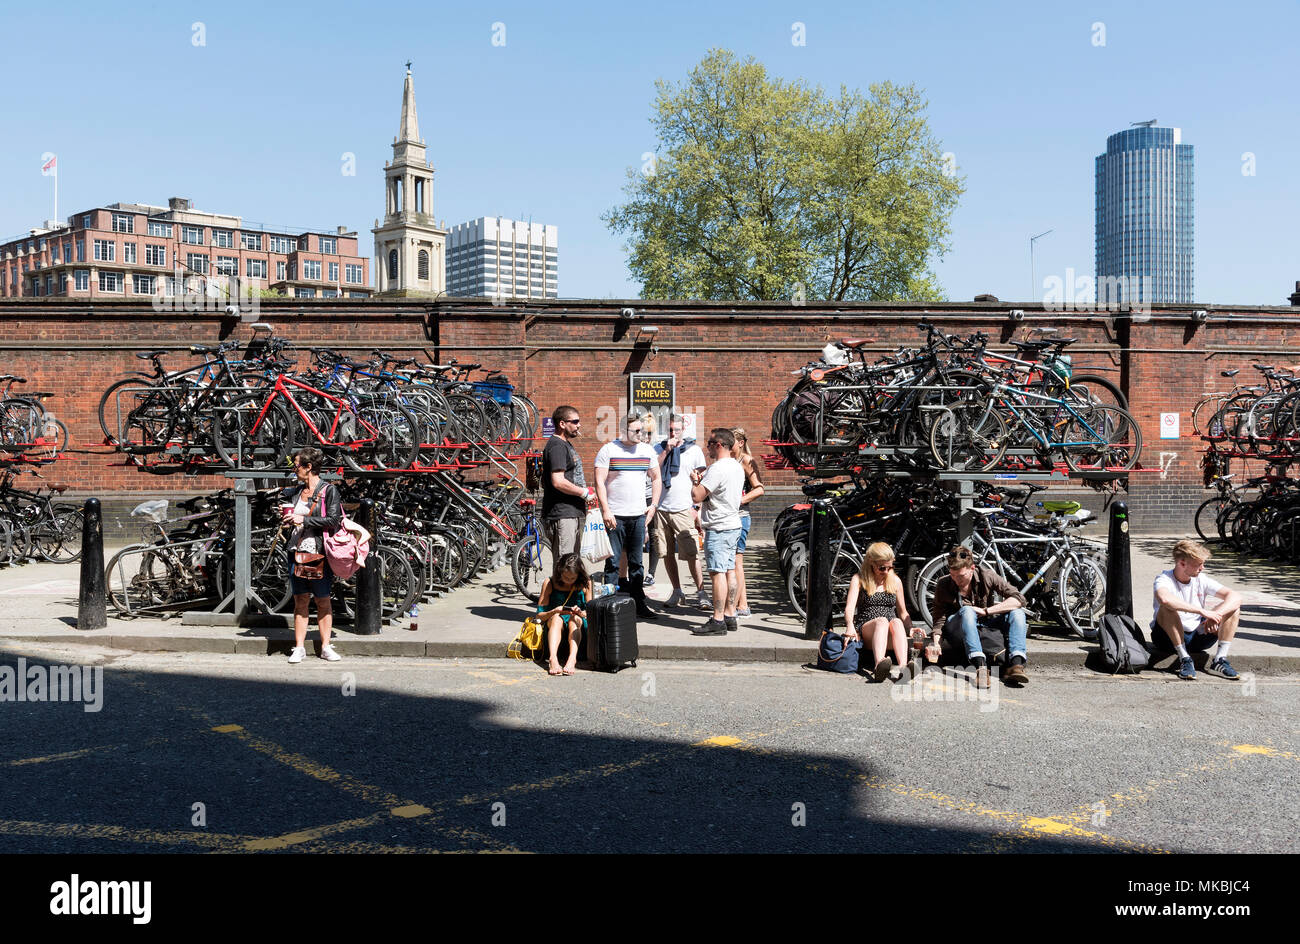 Waterloo Station, London UK. 2018. Zwei Parkplätze für Kunden ihre Zyklen zu parken. Sokers neigen in diesem Bereich zu sammeln. Stockfoto